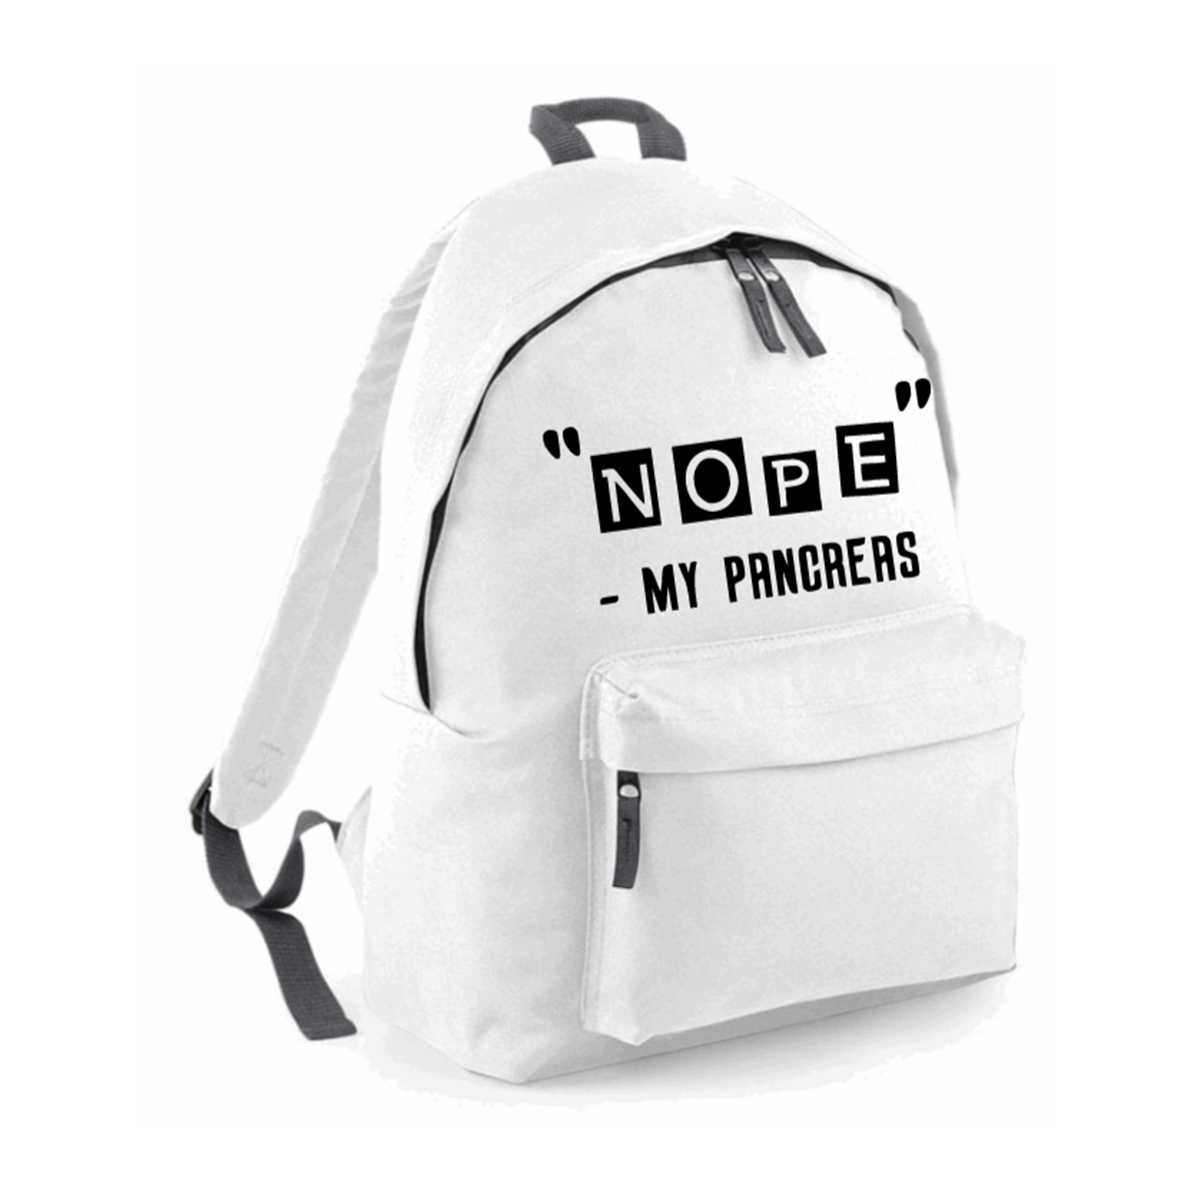 "Nope" - My Pancreas Backpack